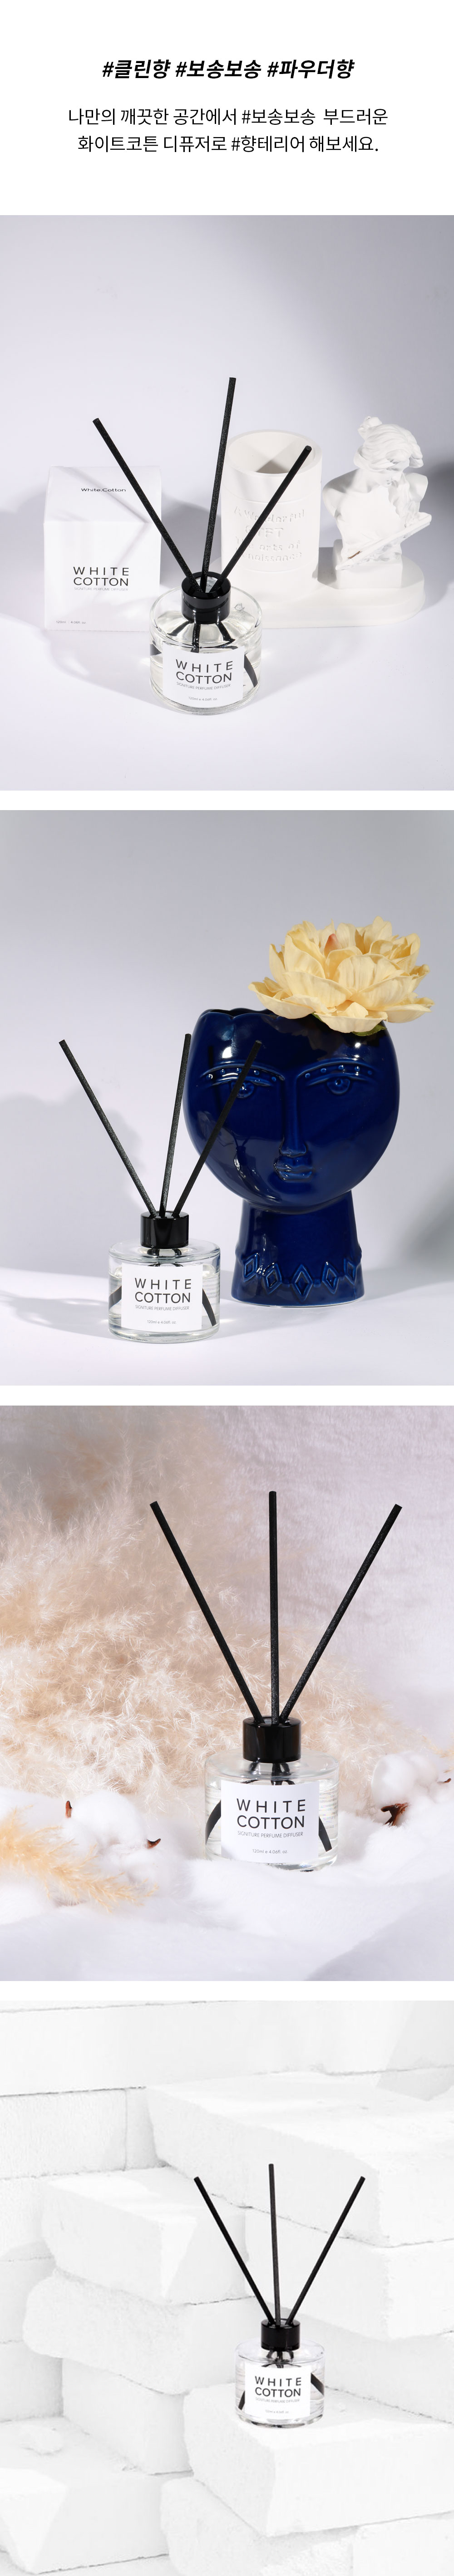 White.Cotton_whitecotton-signature-perfume-diffuser_detail-page02_06_100702.jpg